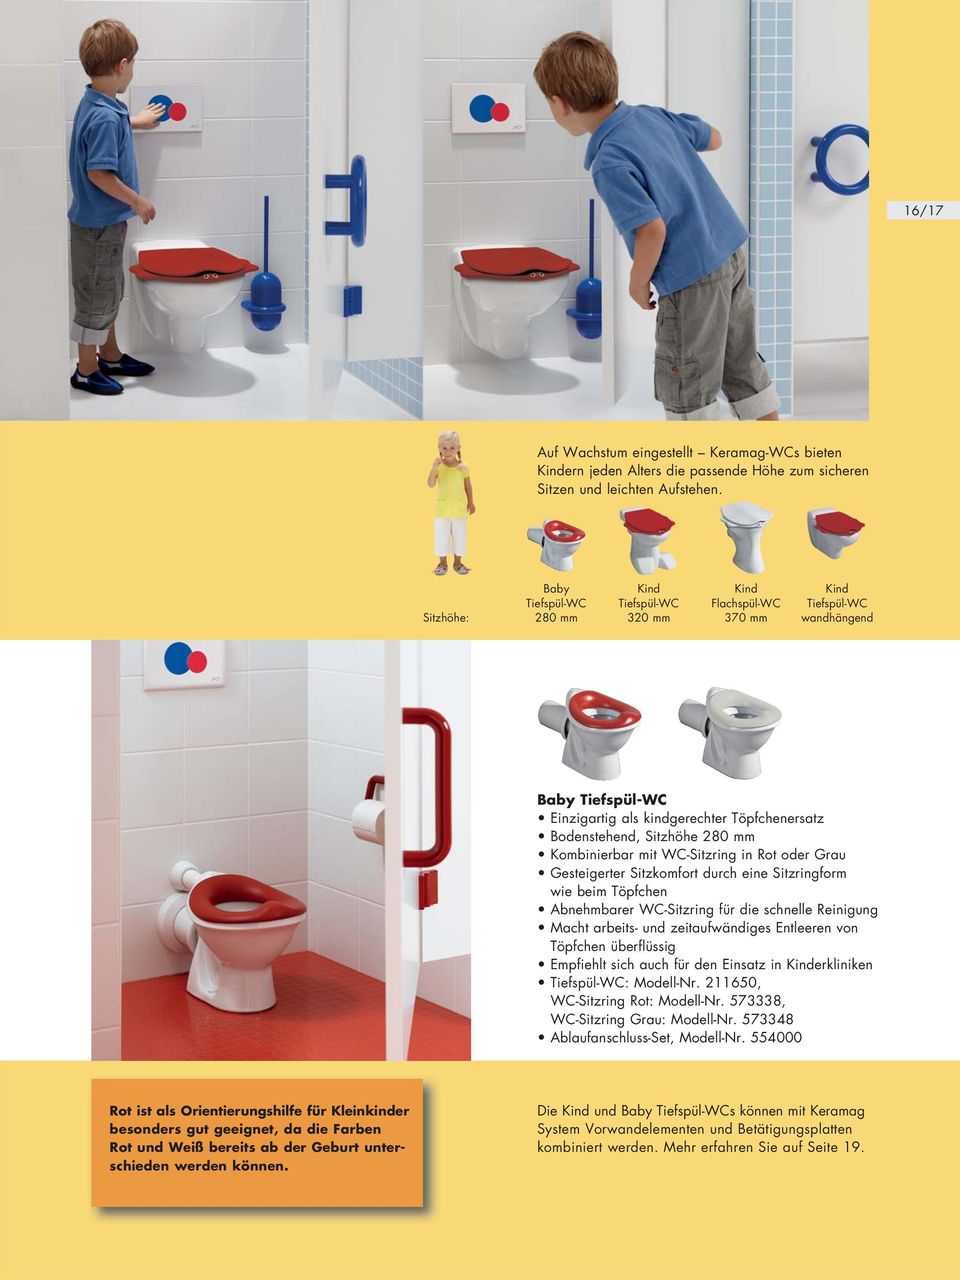 Kombinierbar mit WC-Sitzring in Rot oder Grau Gesteigerter Sitzkomfort durch eine Sitzringform wie beim Töpfchen Abnehmbarer WC-Sitzring für die schnelle Reinigung Macht arbeits- und zeitaufwändiges